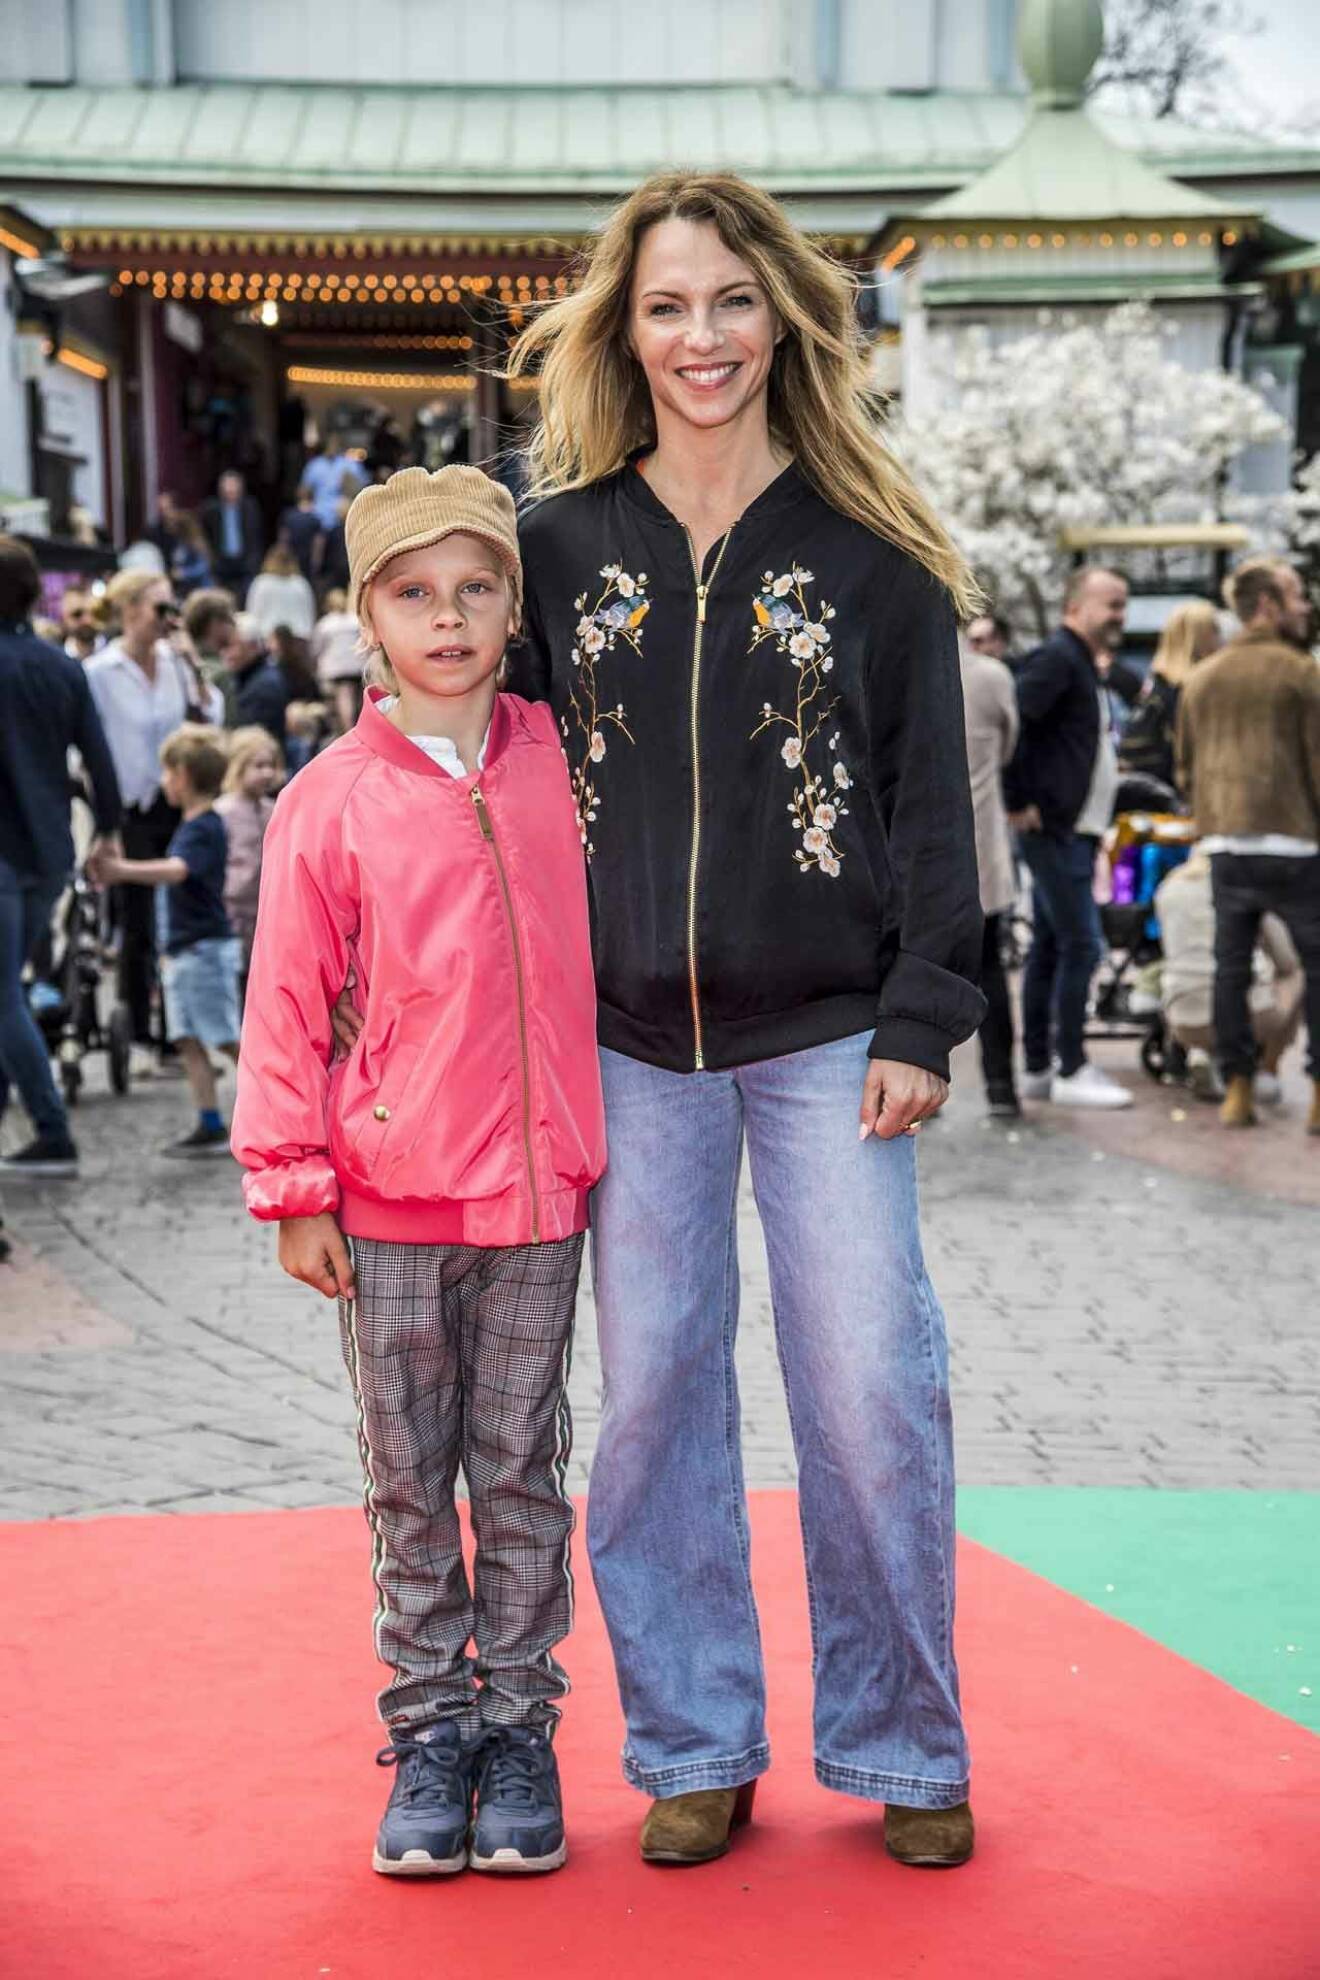 Skådespelerskan Sofia Ledarp invigde Grönan med sonen Loui.